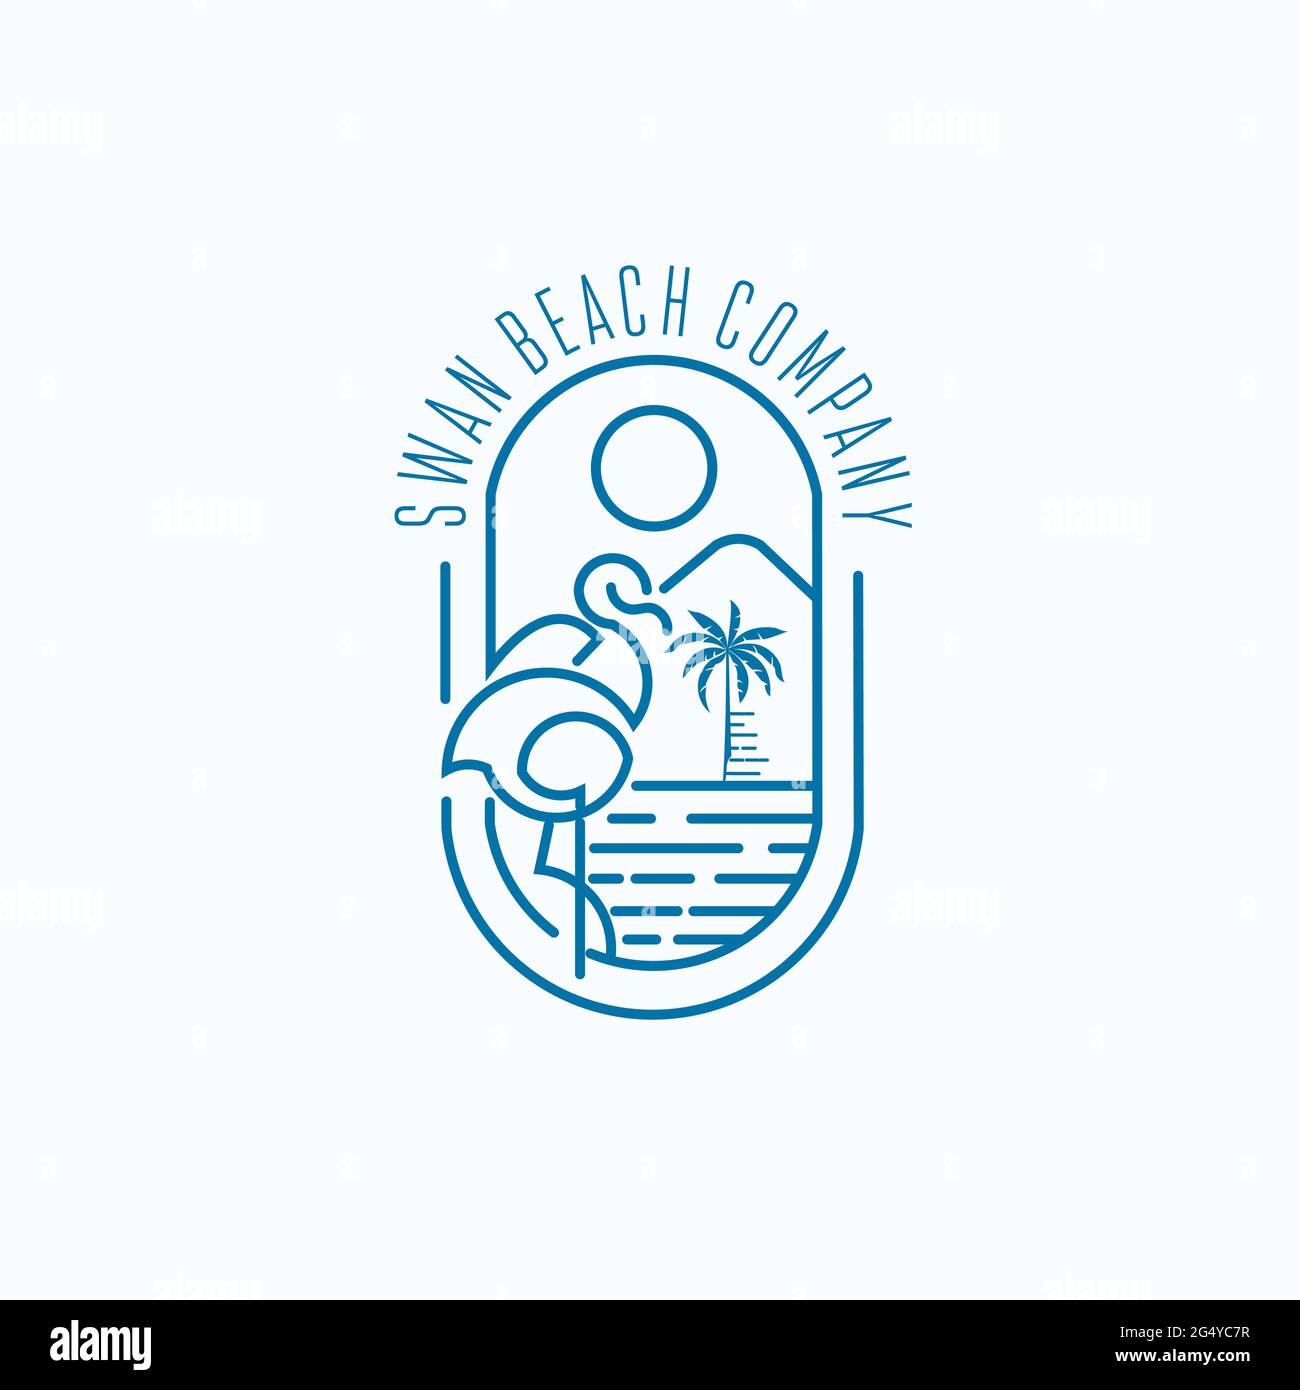 le logo de swan et de la compagnie de plage est une source d'inspiration exclusive Illustration de Vecteur